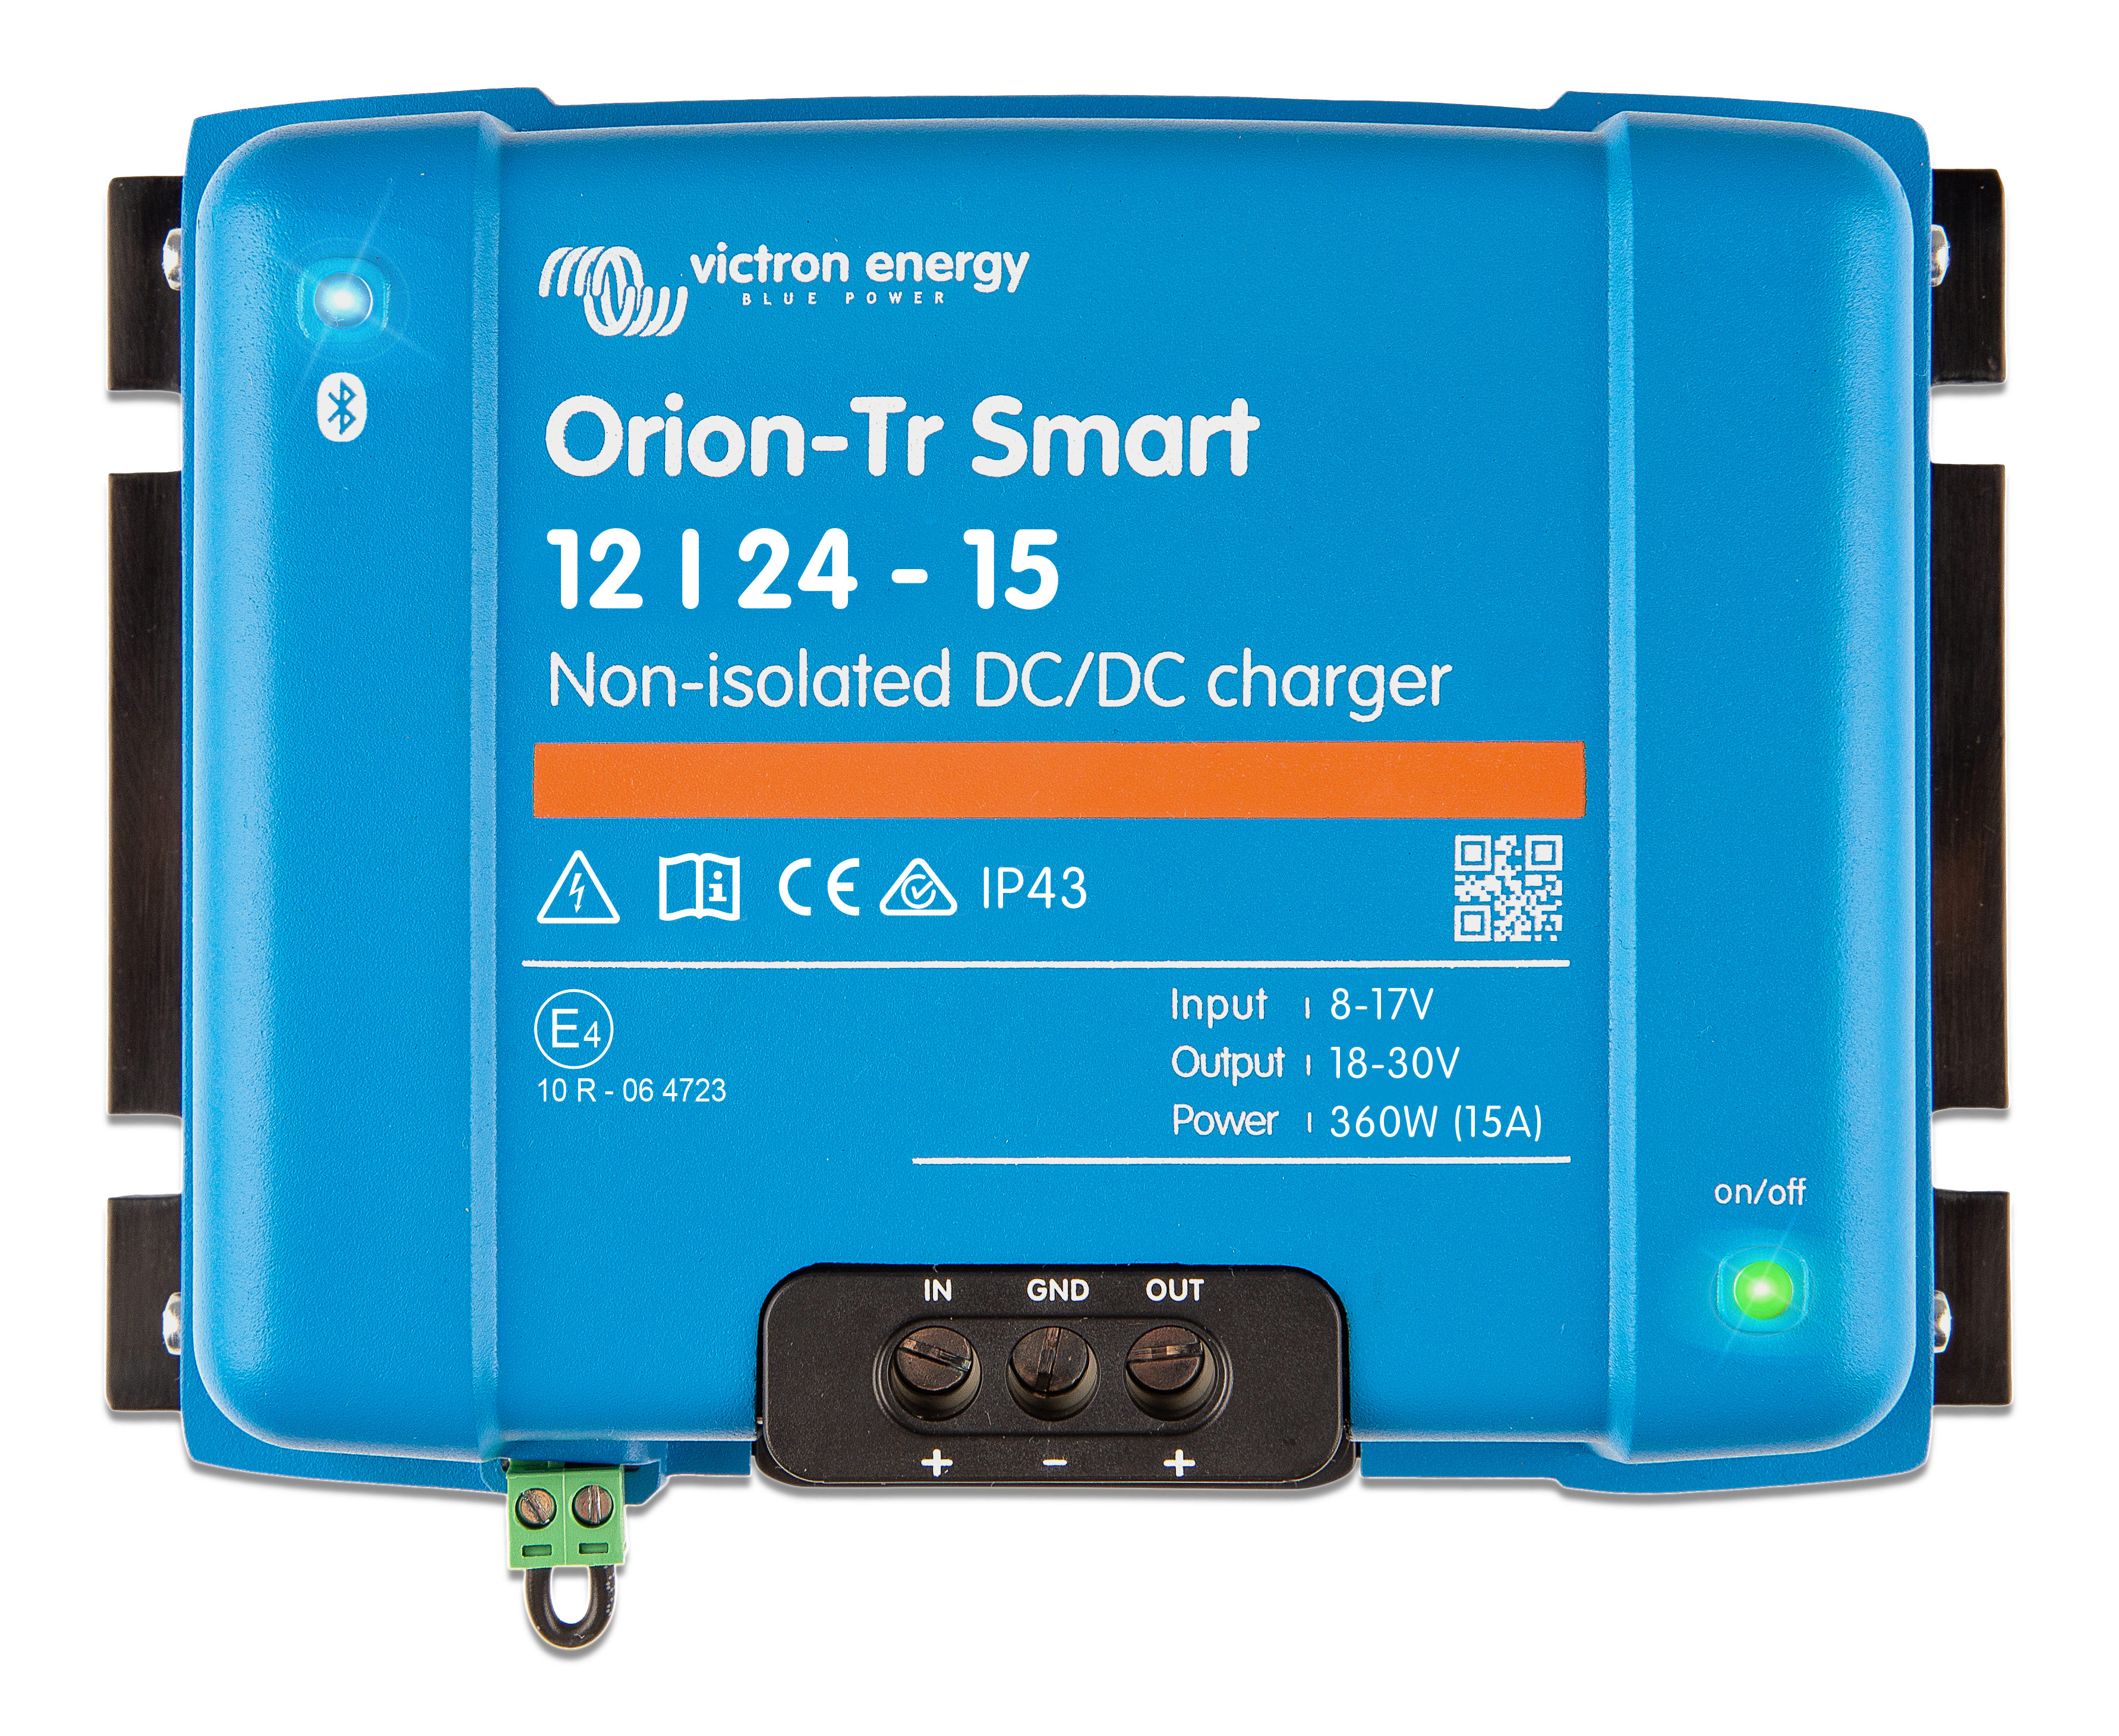 Chargeur CC-CC Orion-Tr Smart non isolé - Victron Energy